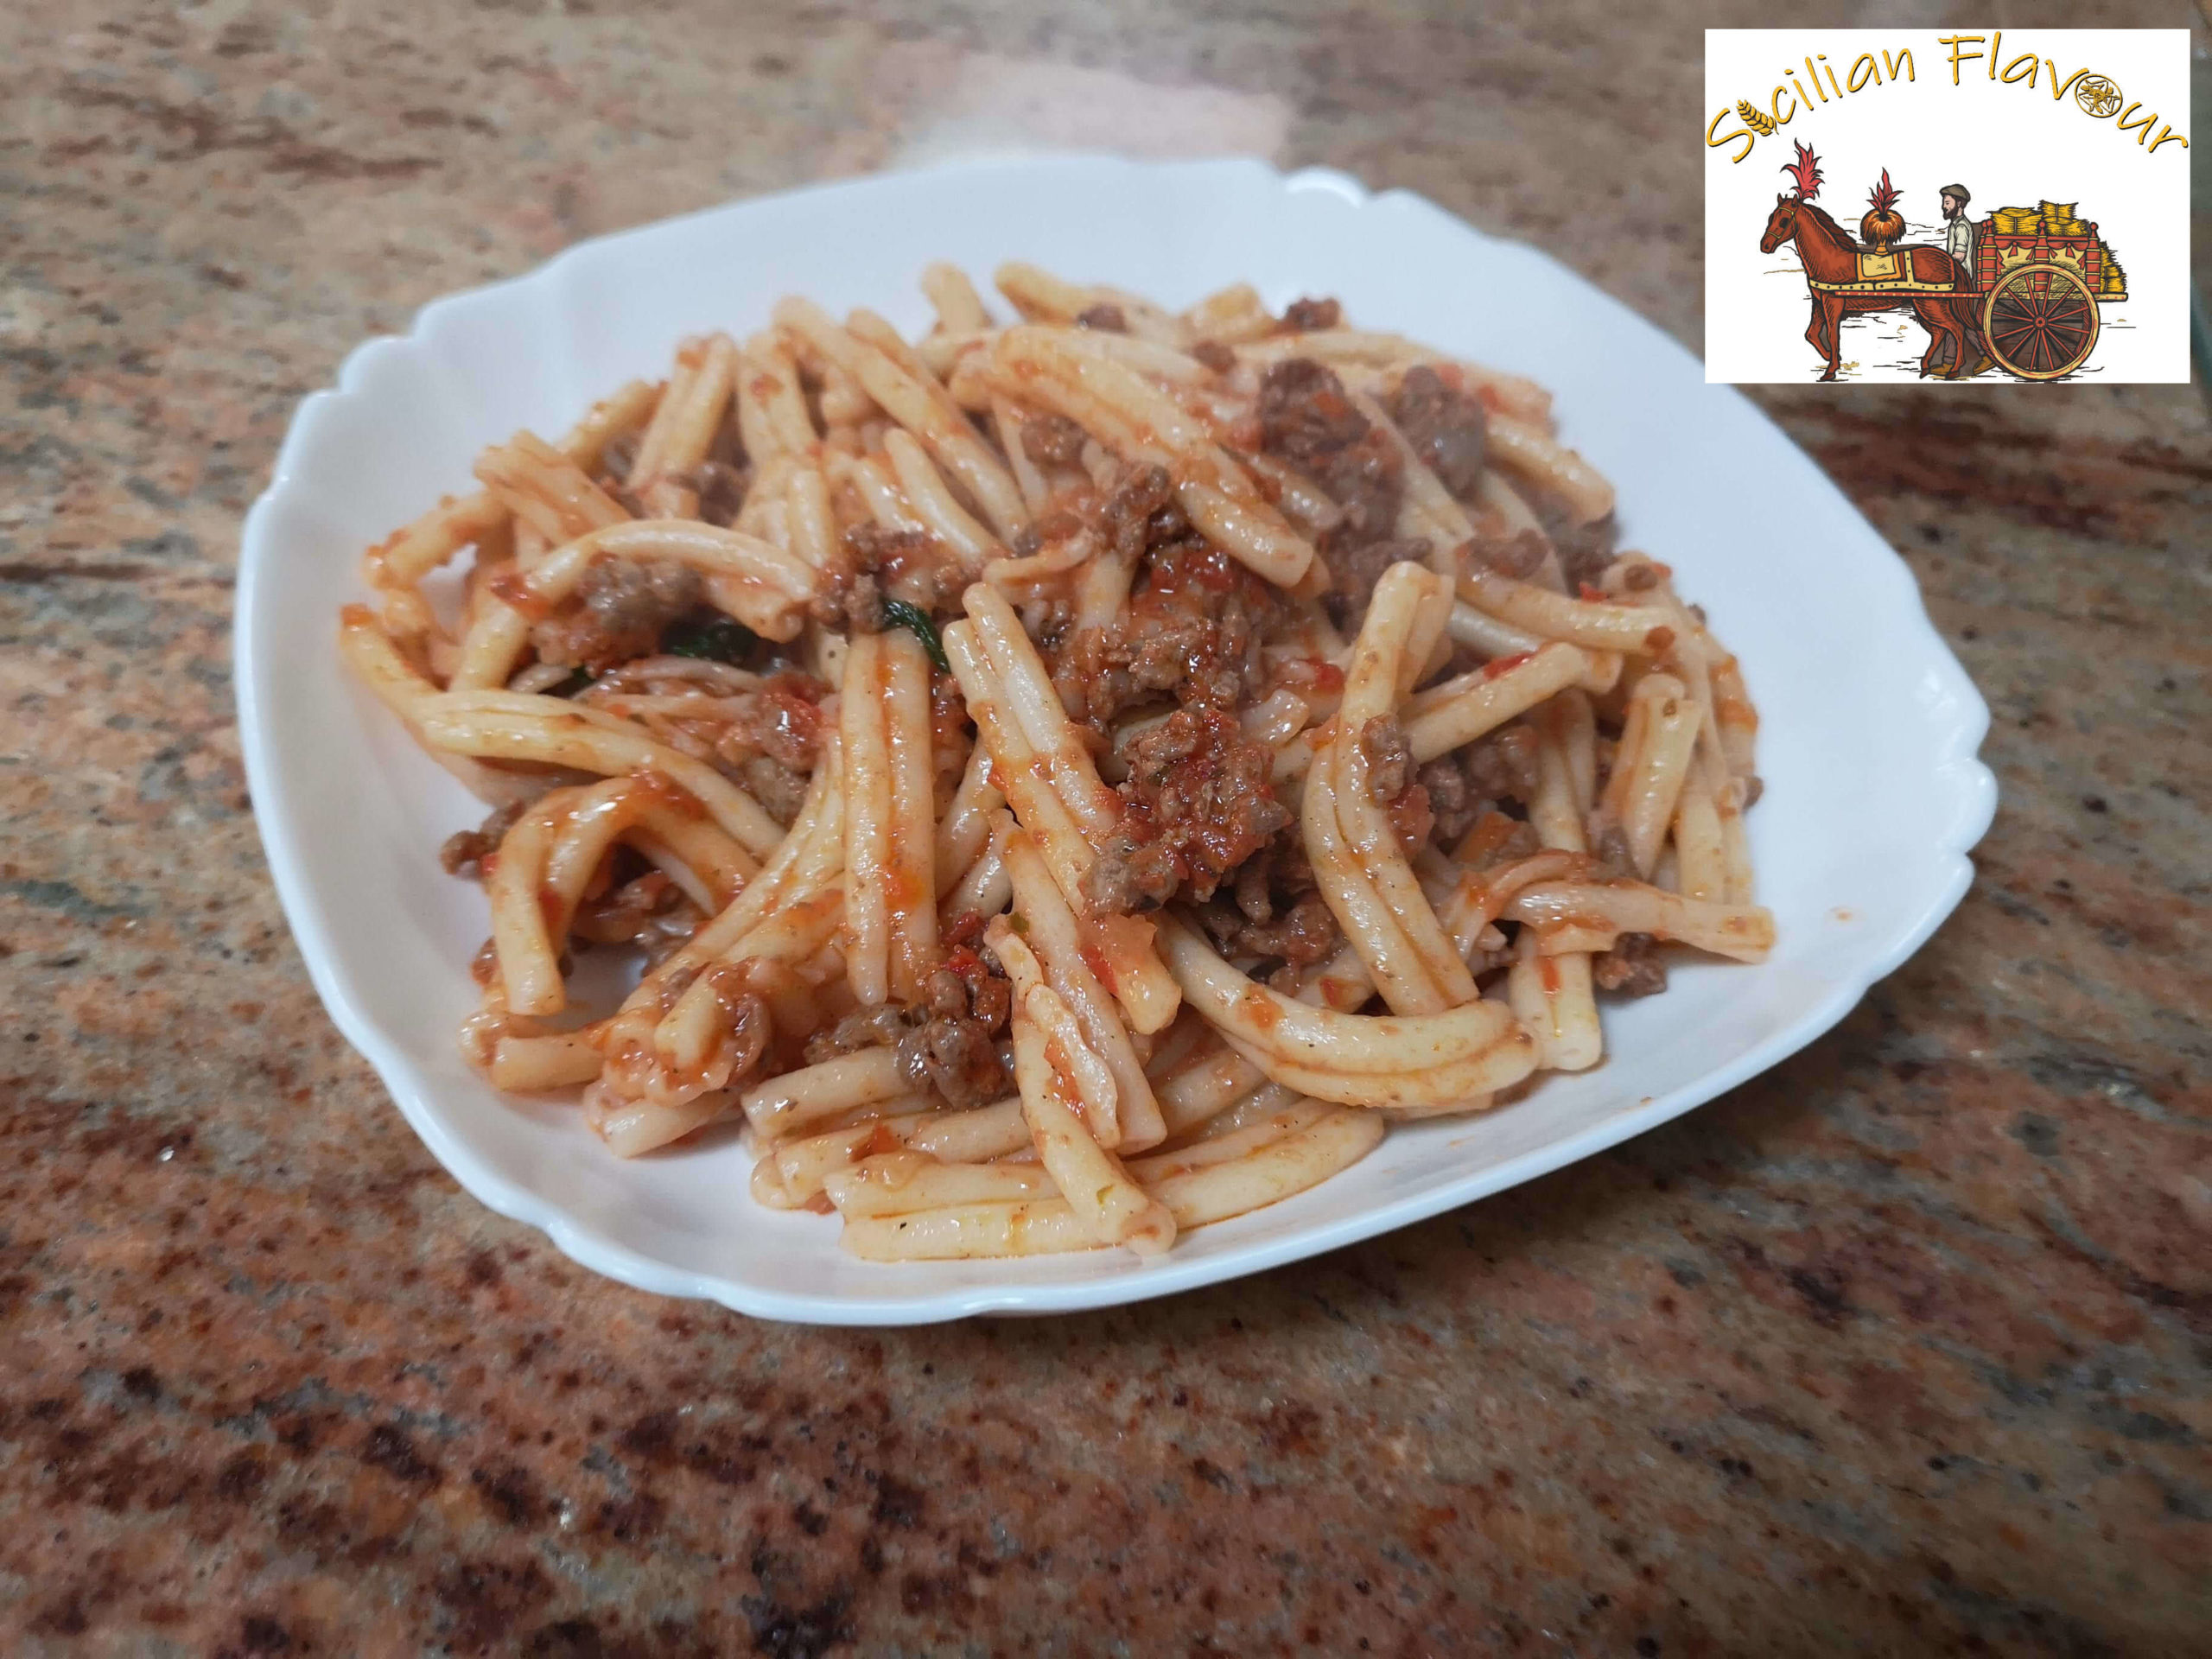 Caserecce with ragu, traditional Sicilian Flavour pasta